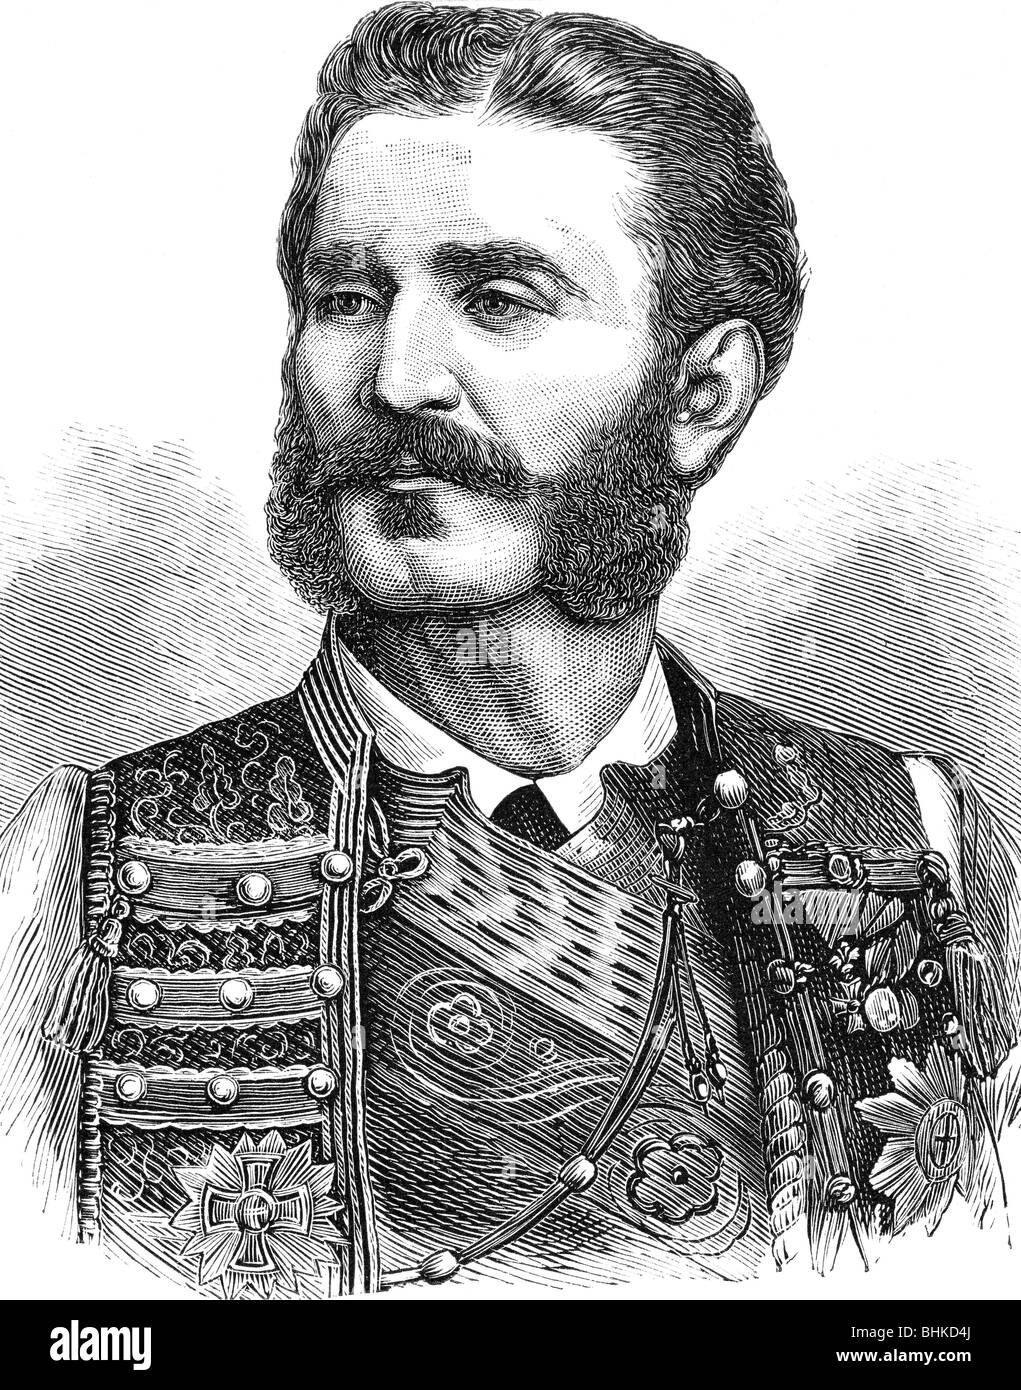 Nicola i, 25.9.1841 - 1.3.1921, Principe di Montenegro, Foto Stock